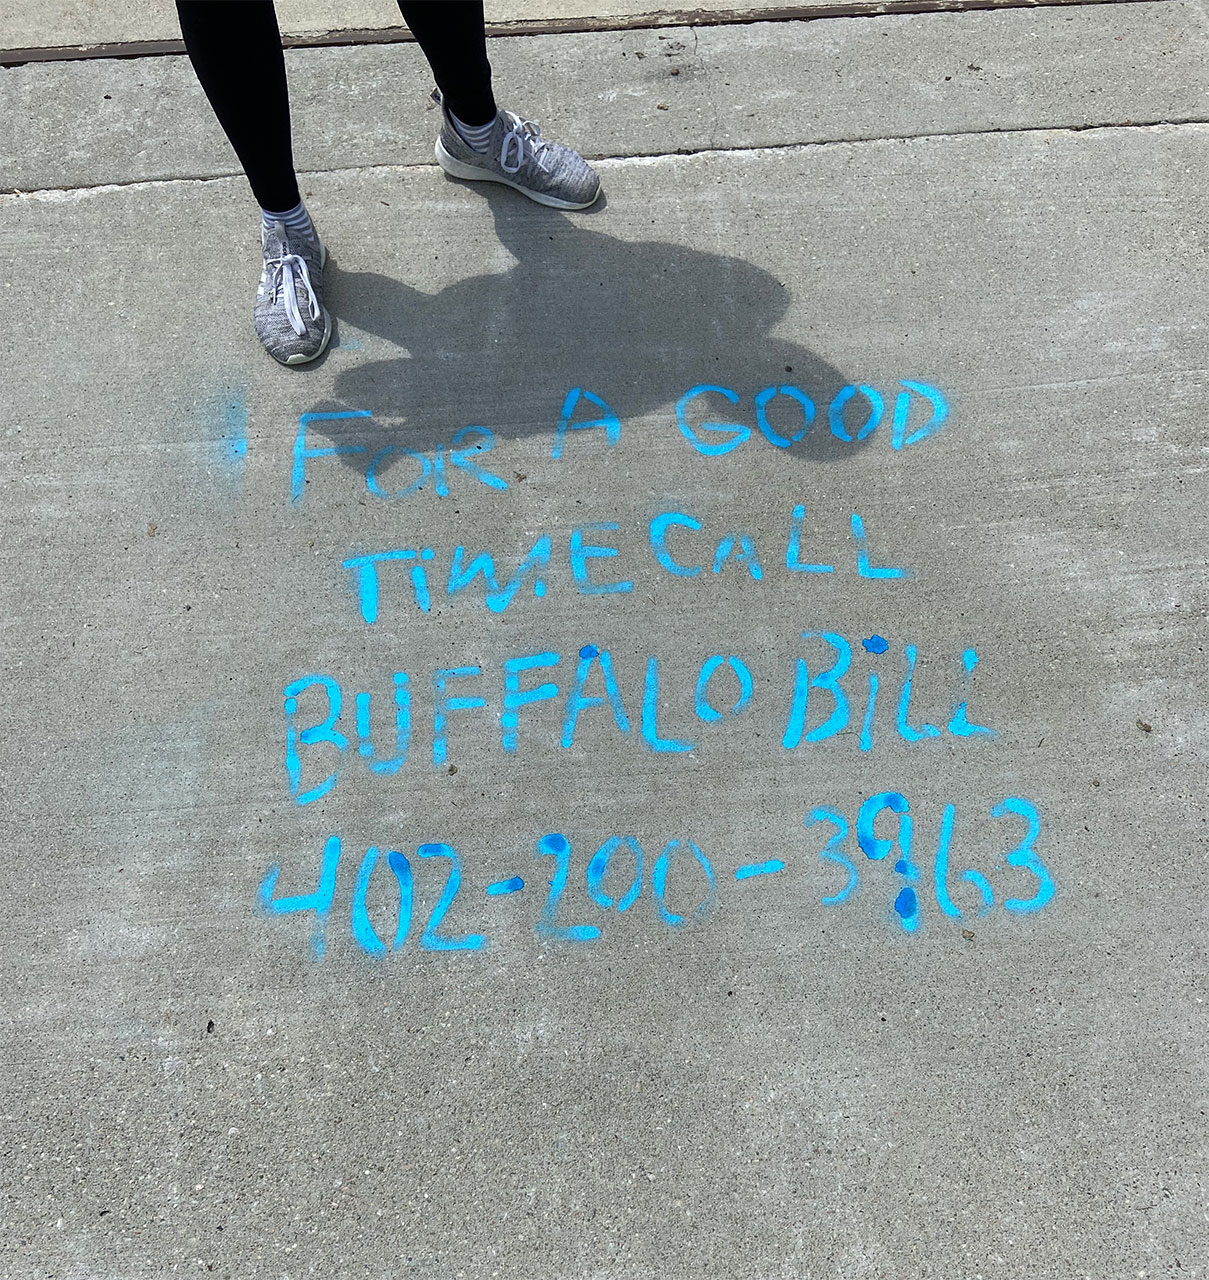 Buffalo Bill sidewalk chalk